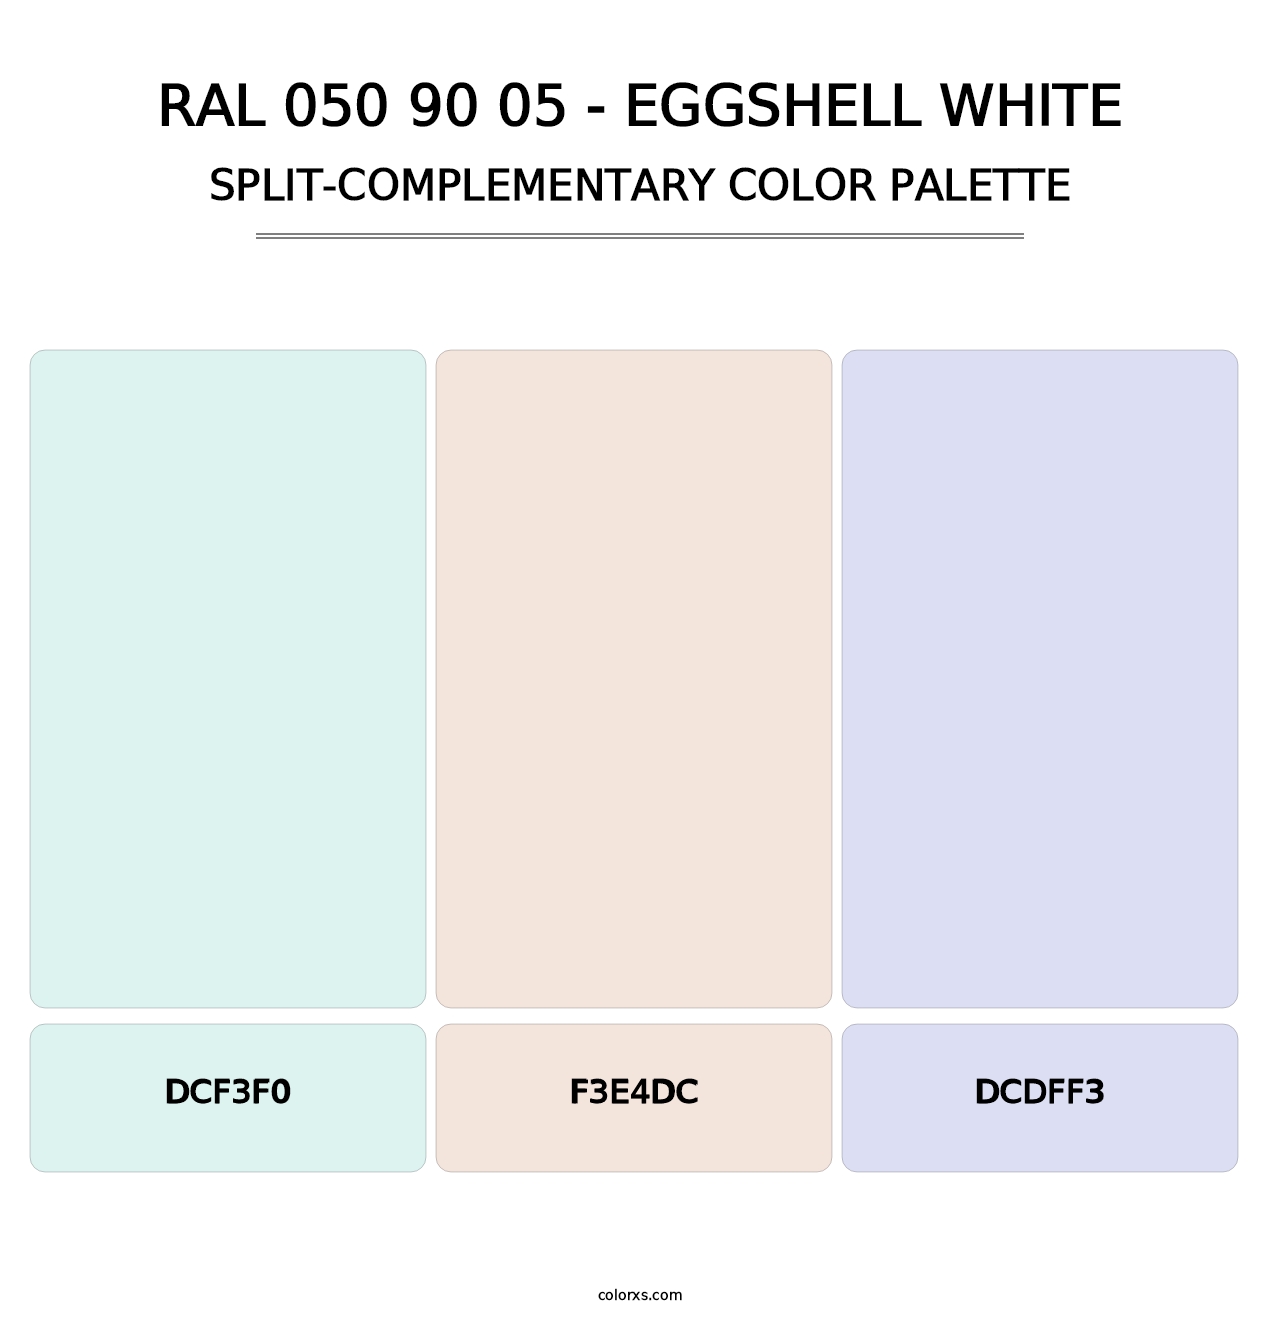 RAL 050 90 05 - Eggshell White - Split-Complementary Color Palette